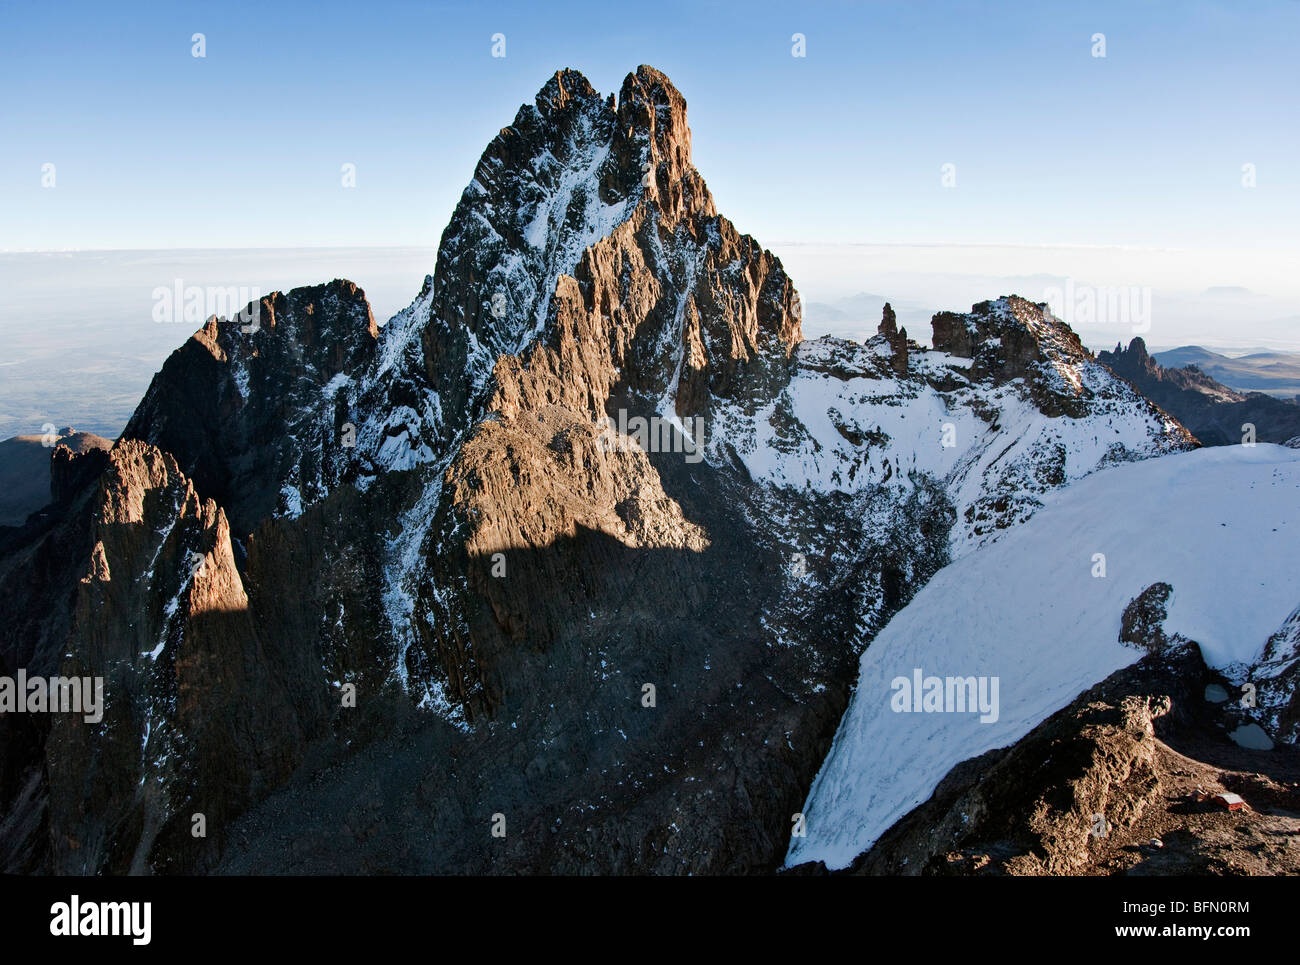 Kenia. Die Schnee bestäubt Gipfeln des Mount Kenya, Afrika s zweite höchsten Berg mit Lewis-Gletscher im Vordergrund. Stockfoto